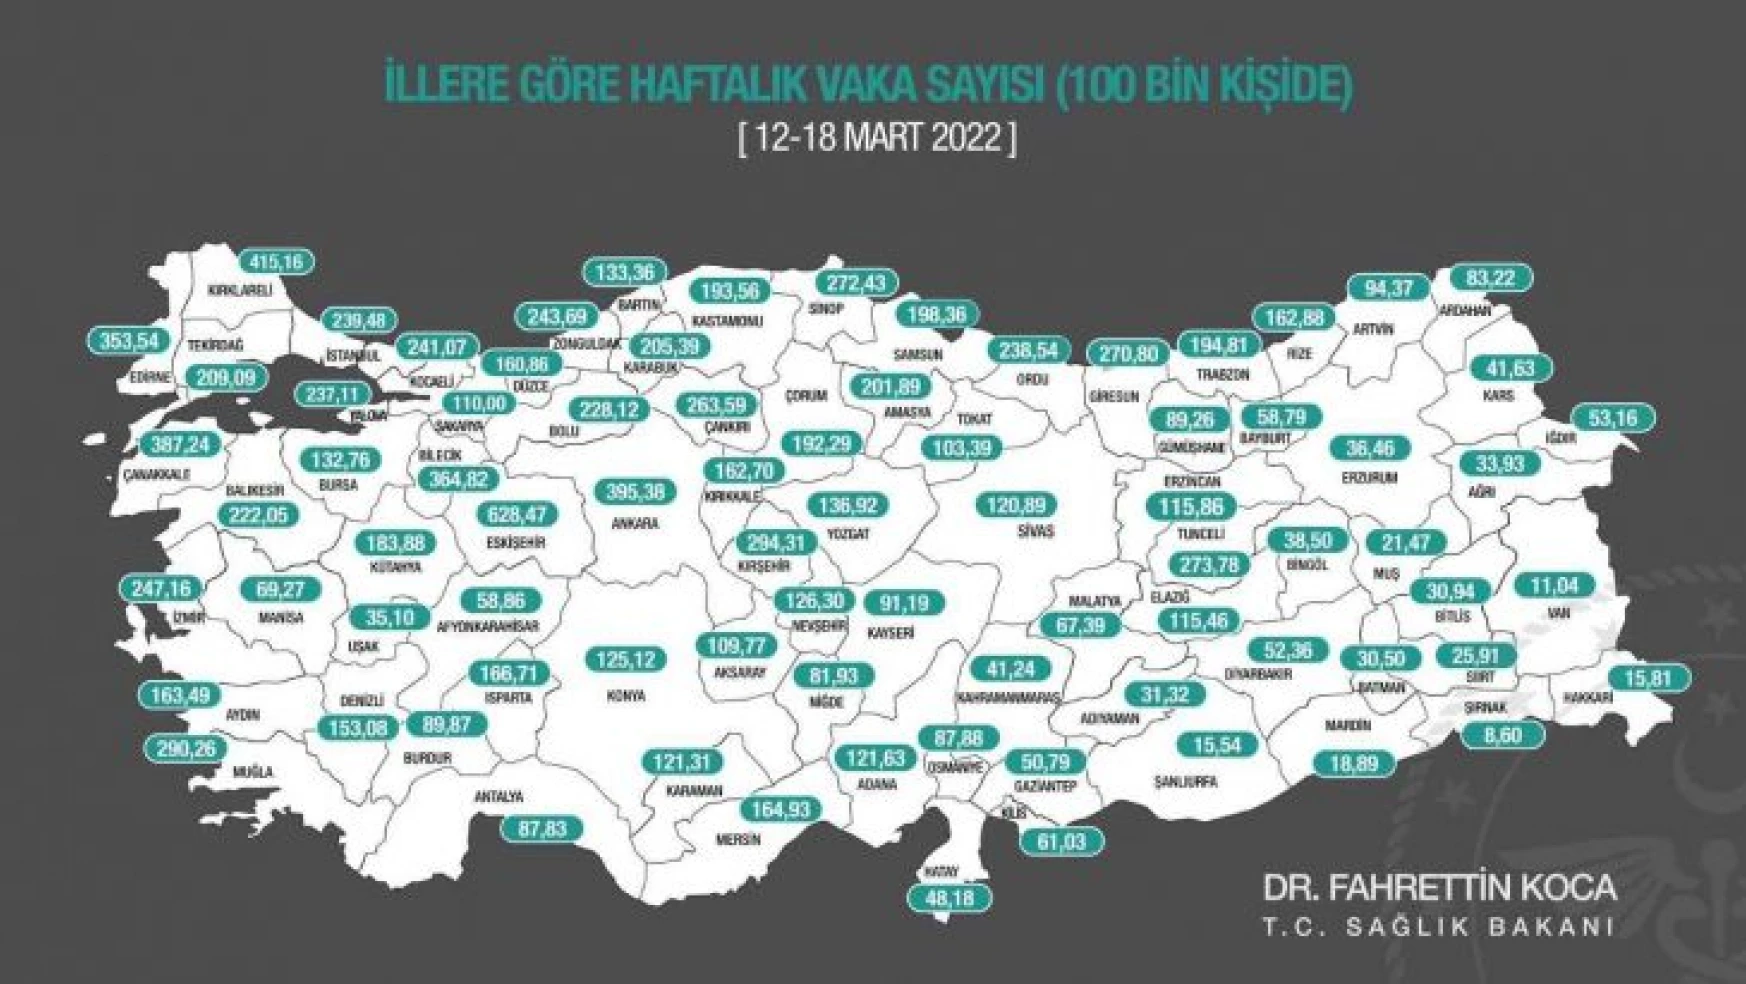 Sağlık Bakanı Fahrettin Koca, 12-18 Mart arasında, il bazında 100 bin kişi içinde bir haftalık toplam yeni Covid-19 vaka sayısının yer aldığı insidans haritasını paylaştı.